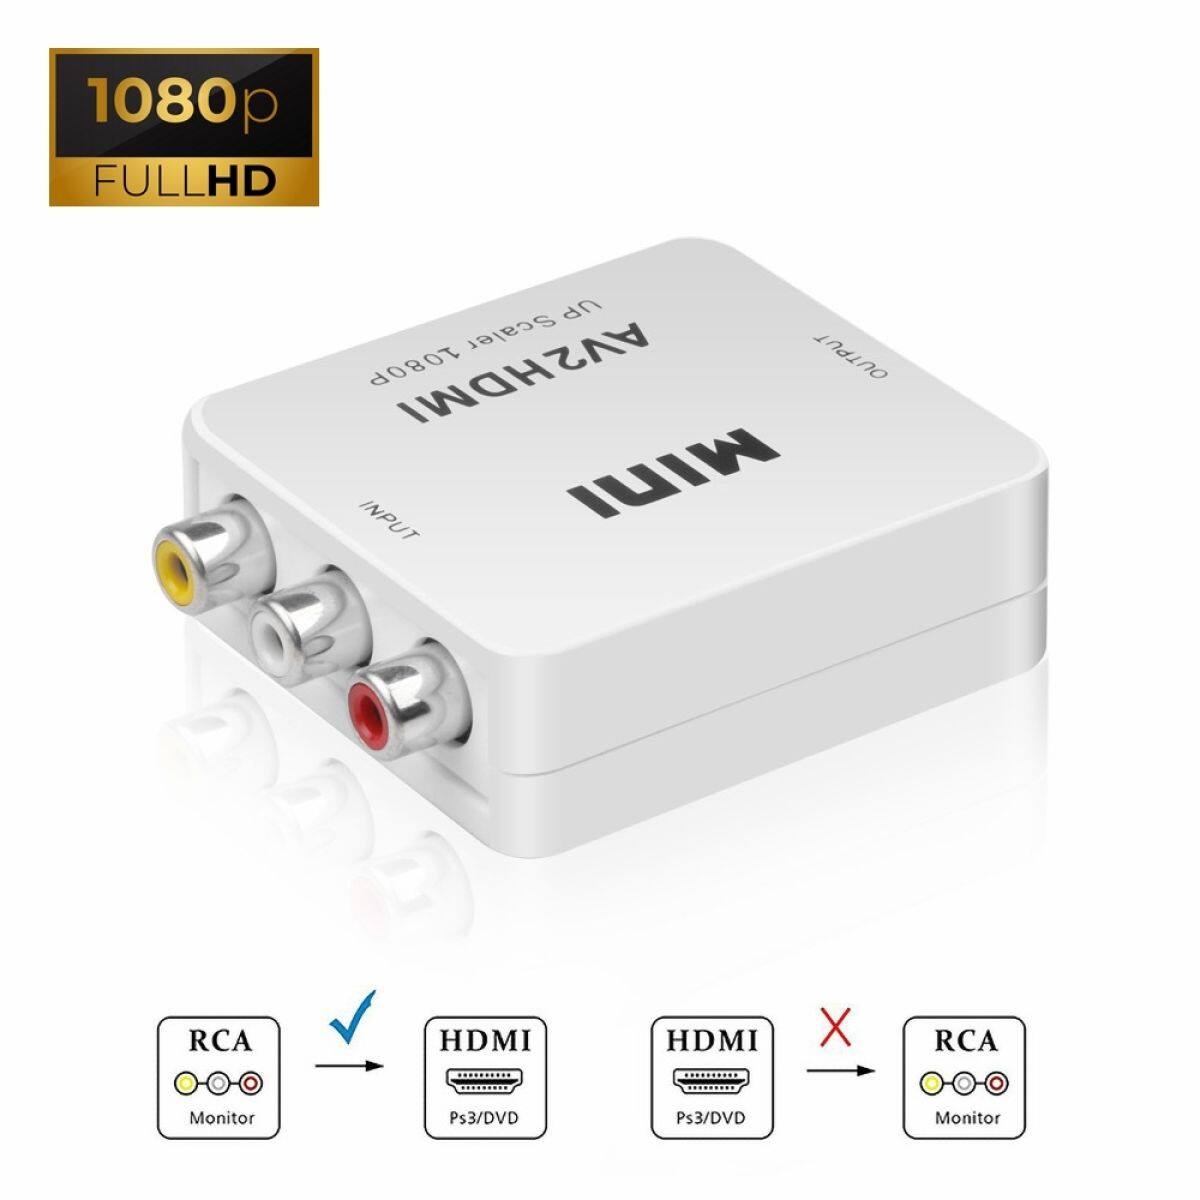 ตัวแปลงสัญญาณ กล่องแปลงสัญญาav แปลงavเป็นhdmi กล่องแปลง AV (RCA)  to HDMI หัวแปลง AV เป็น HDMI ( AV to HDMI converter) ตัวแปลงสัญญาณ AV2HDMI